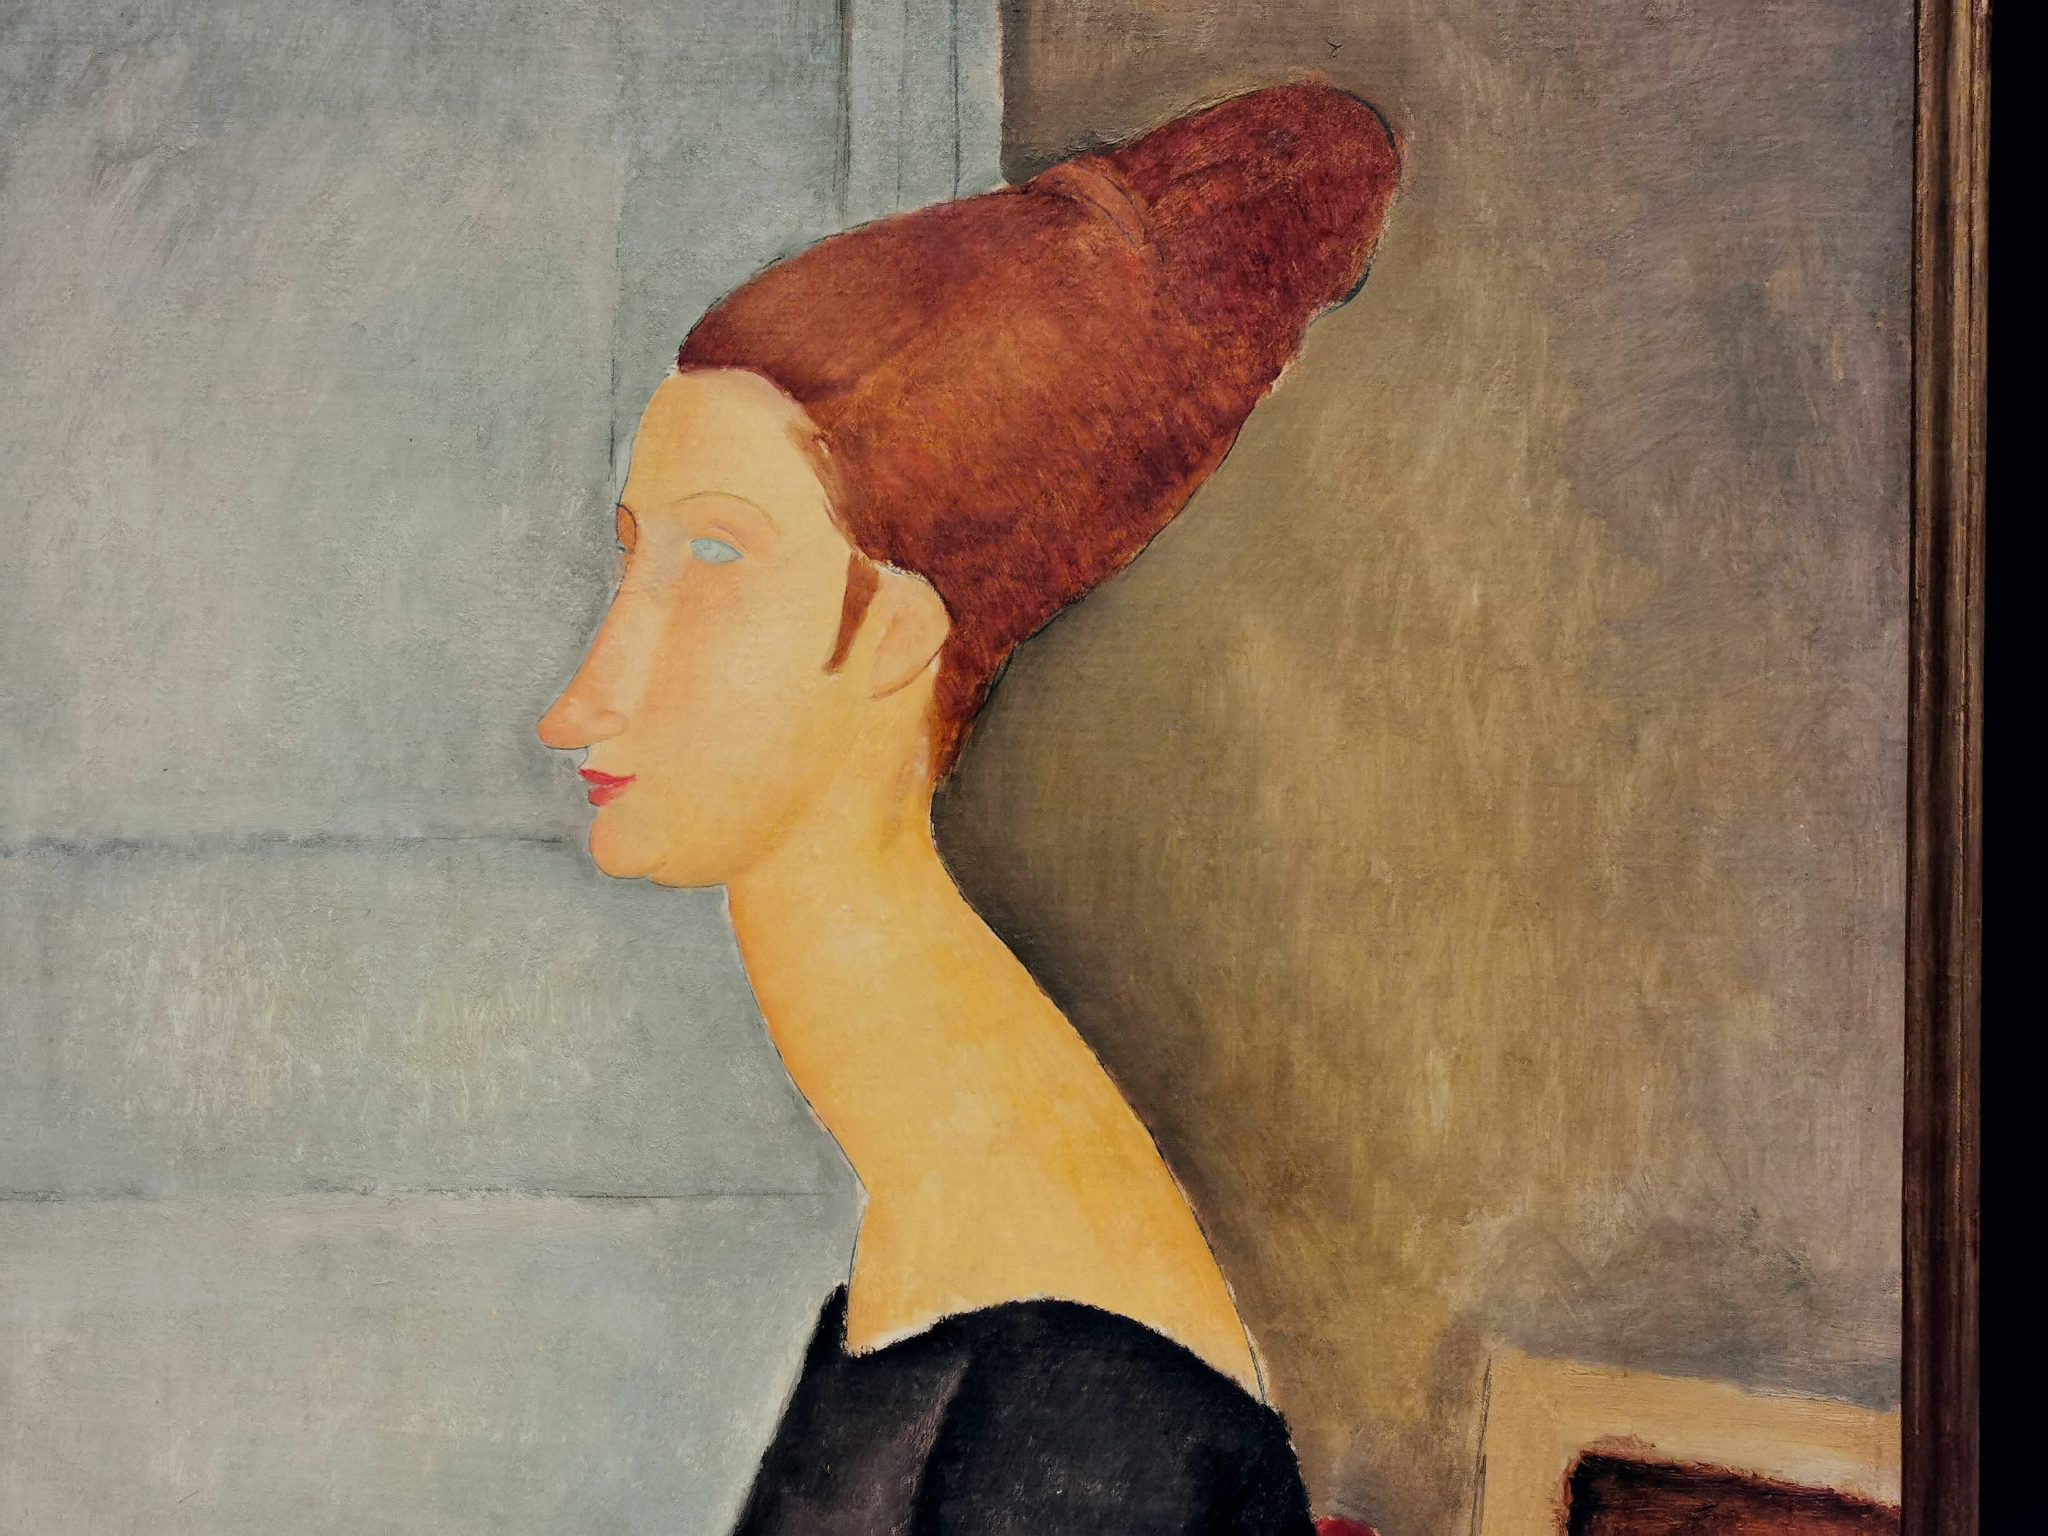 Particolare del dipinto Jeanne Hébuterne, esposto nella mostra per il centenario di Modigliani a Livorno